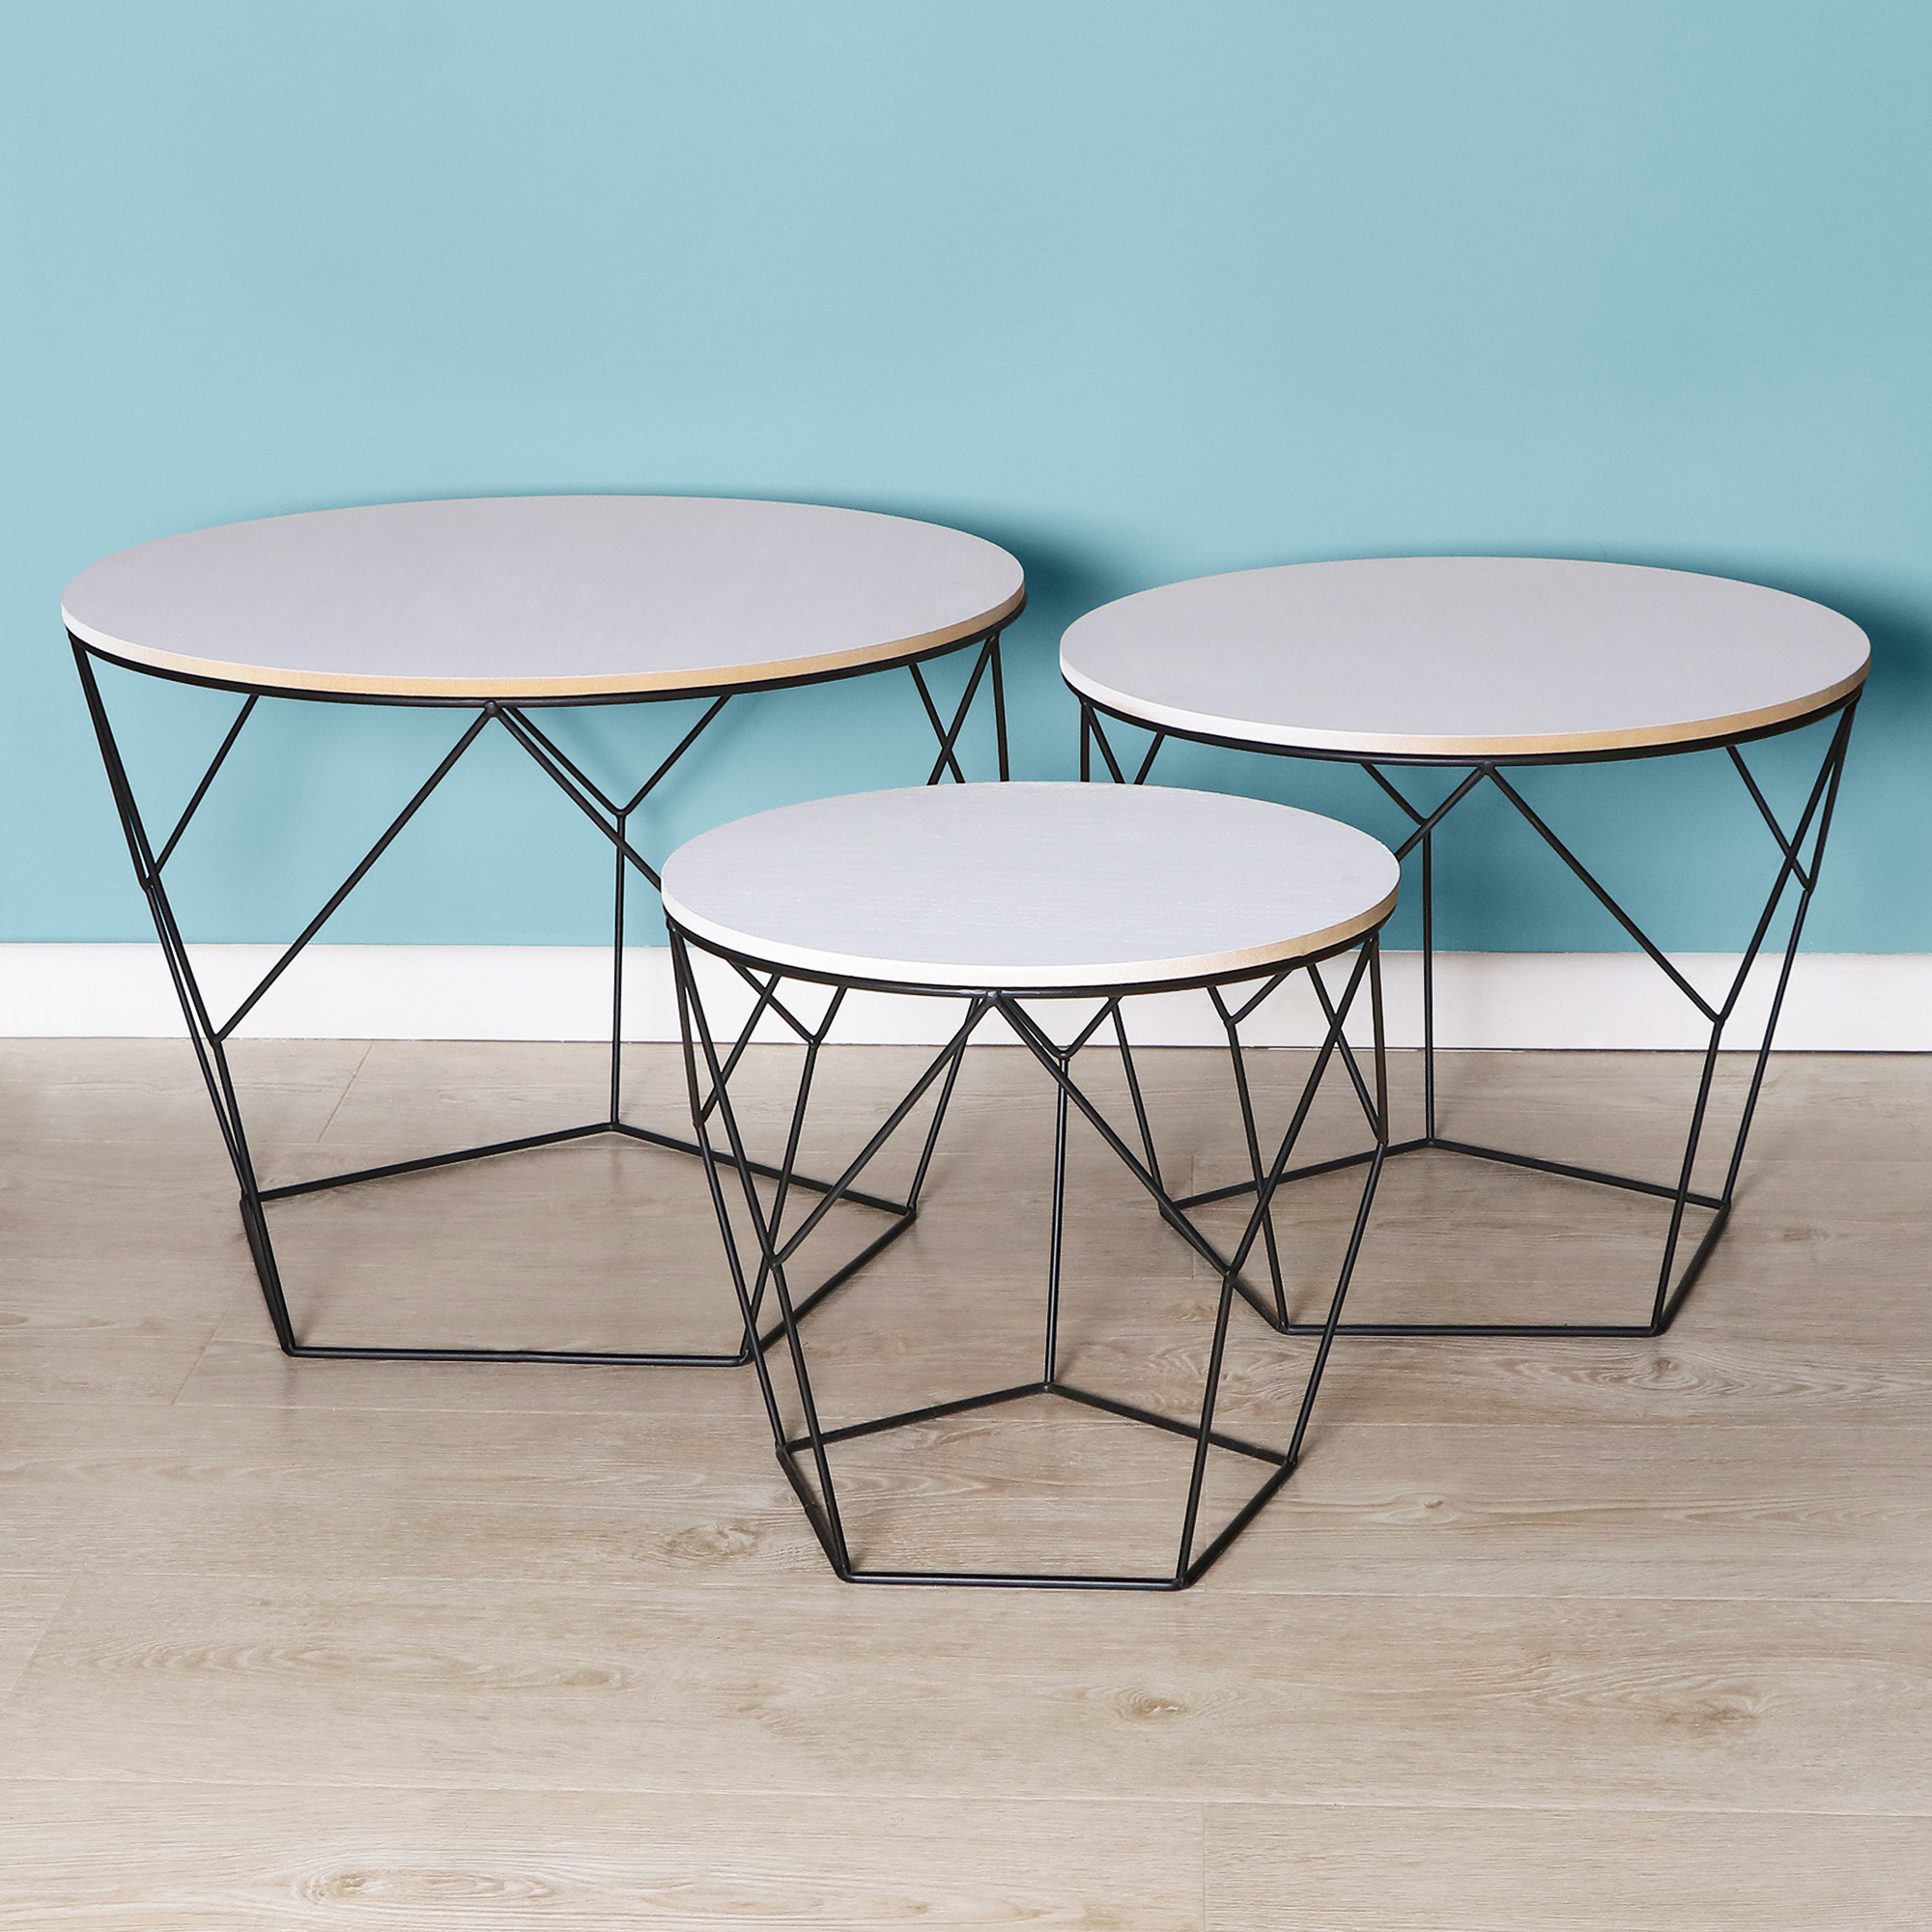 Набор столиков Ad trend furniture 3 штуки, цвет черный - фото 2